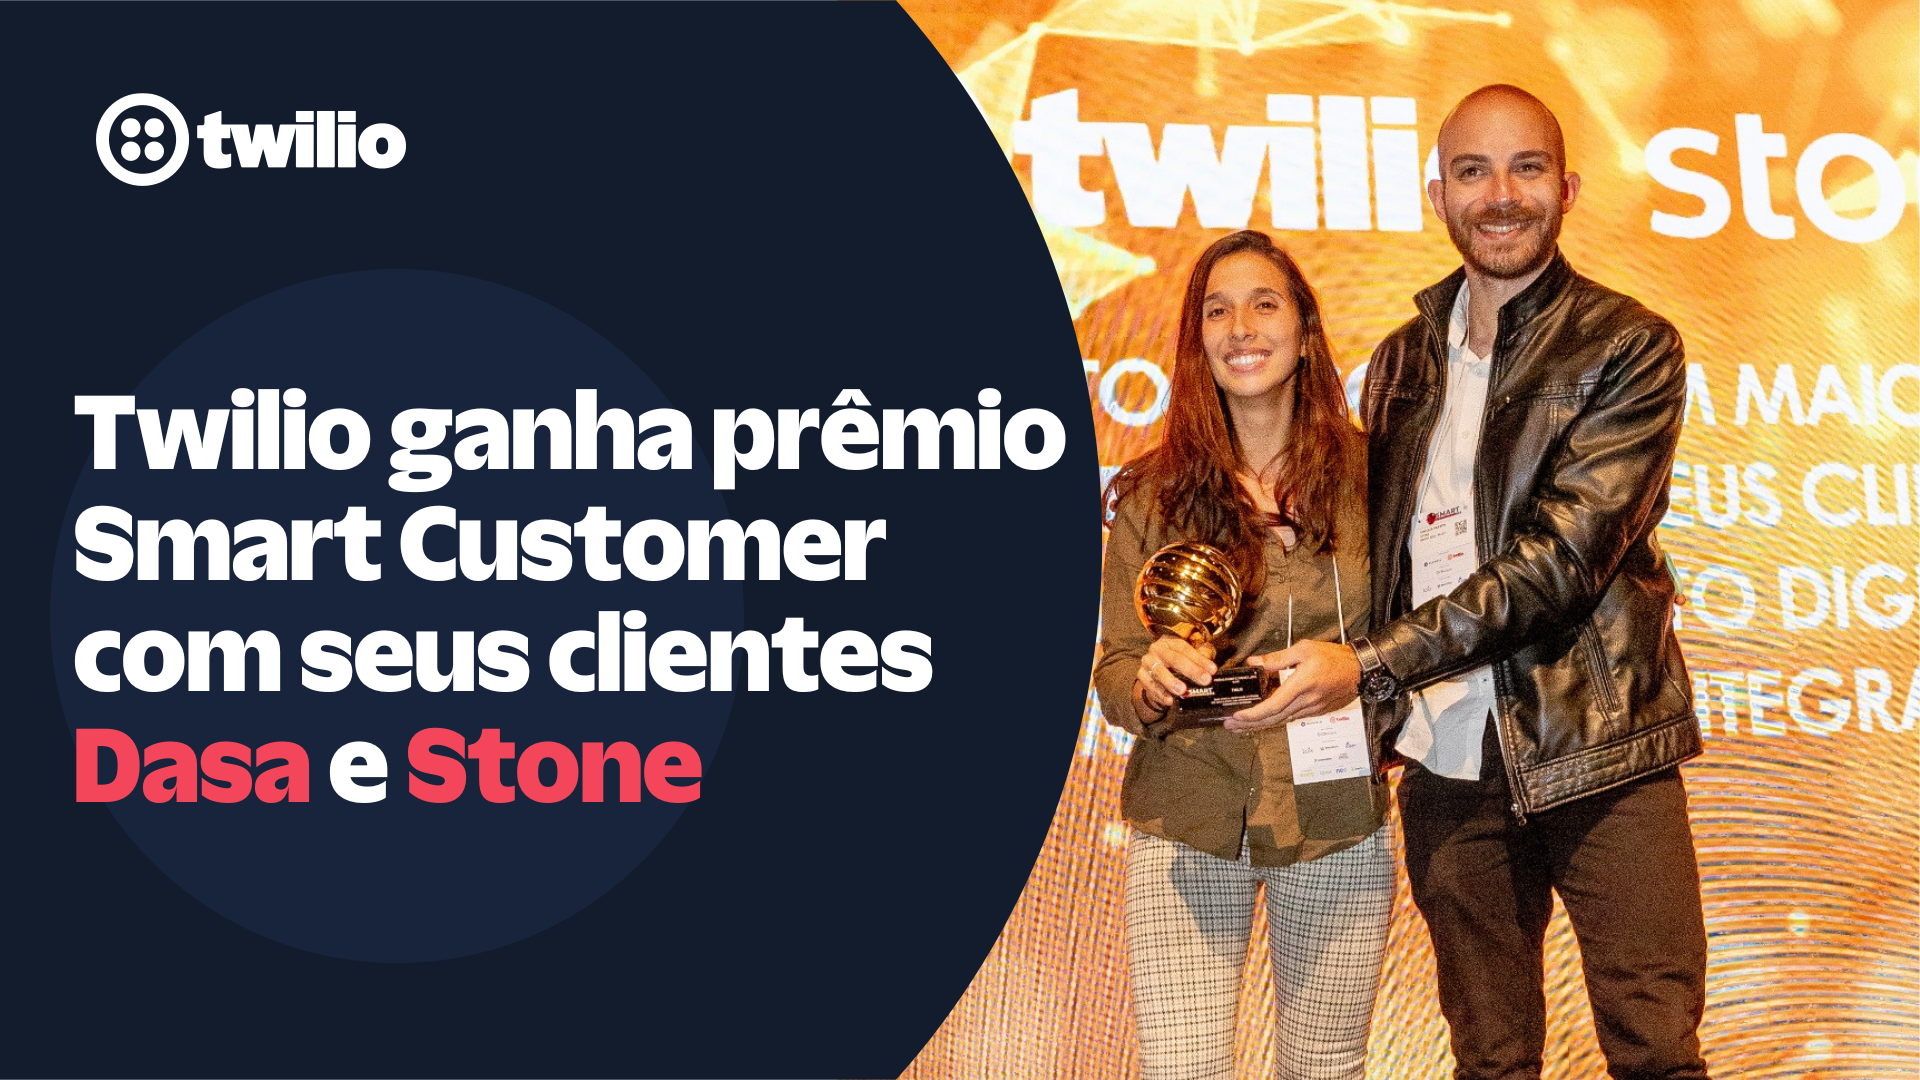 Twilio ganha o prêmio Smart Customer com seus clientes Dasa e Stone